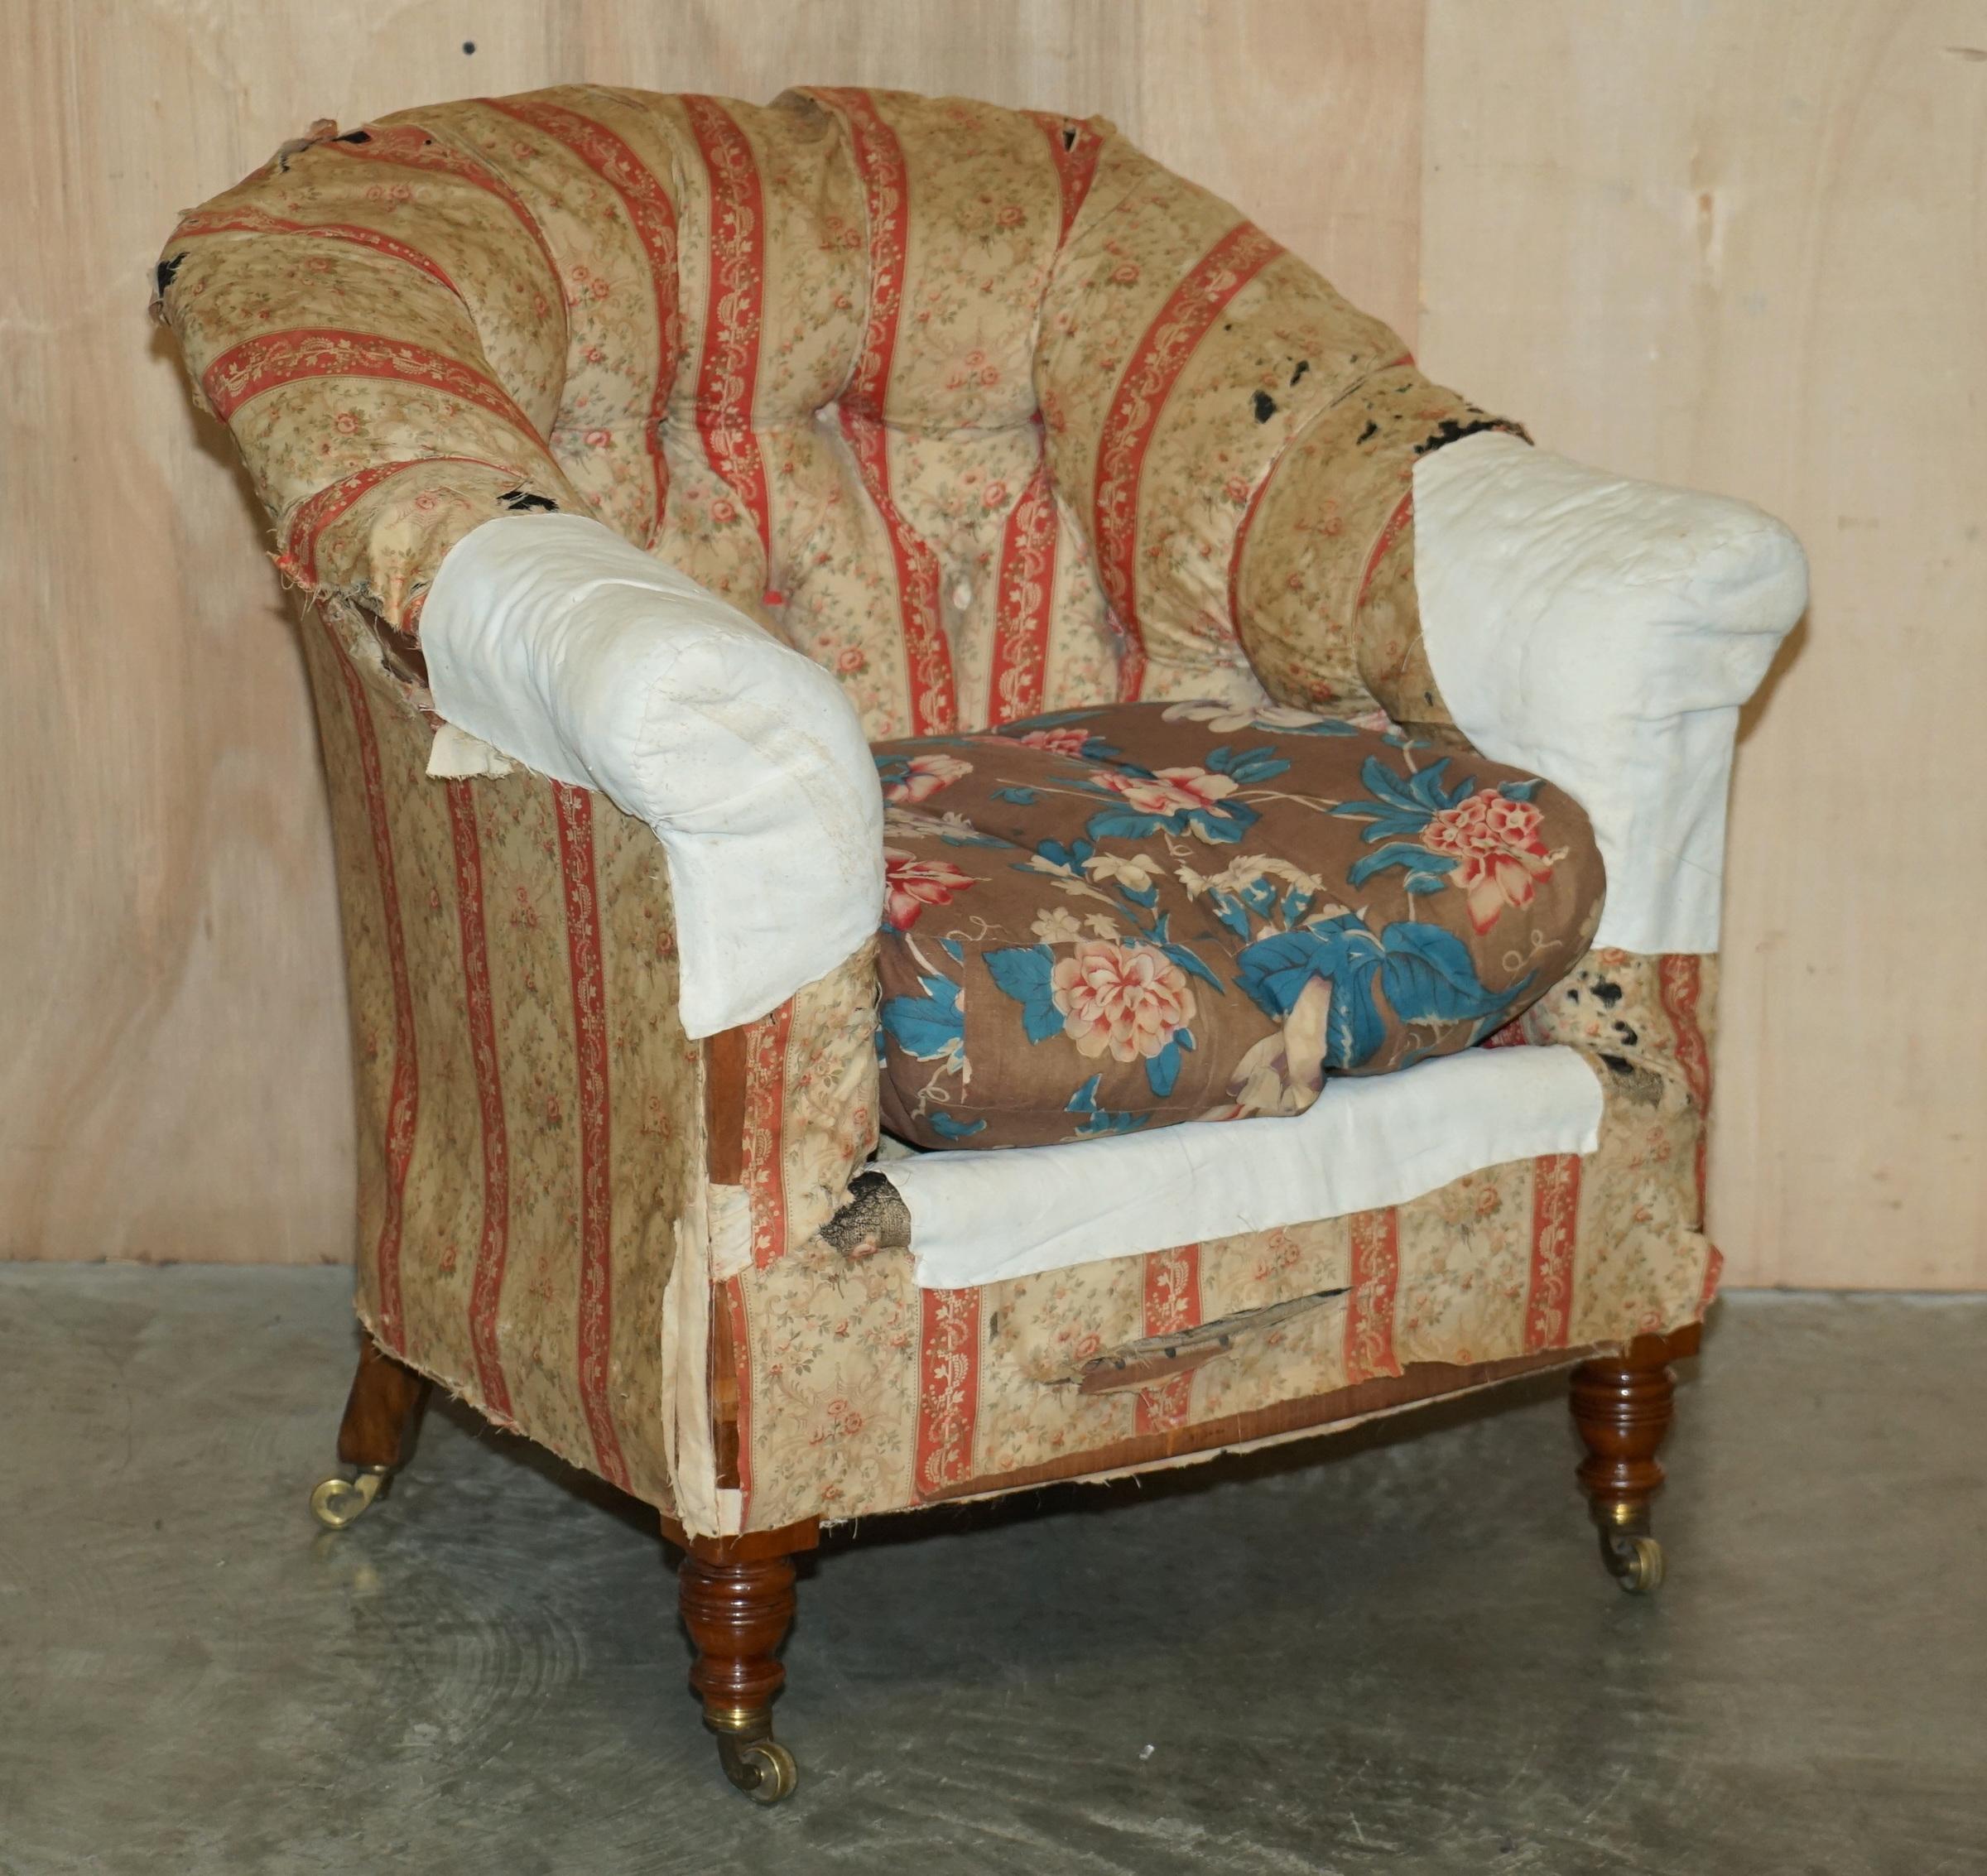 Wir freuen uns, Ihnen diese einmalige Gelegenheit zu bieten, ein sehr seltenes, originales Paar von Howard & Son's Berners Street Sesseln im originalen, strapazierten Inlettstoff um 1870-1880 zu besitzen.

Nie wieder werden Sie in der Lage sein,